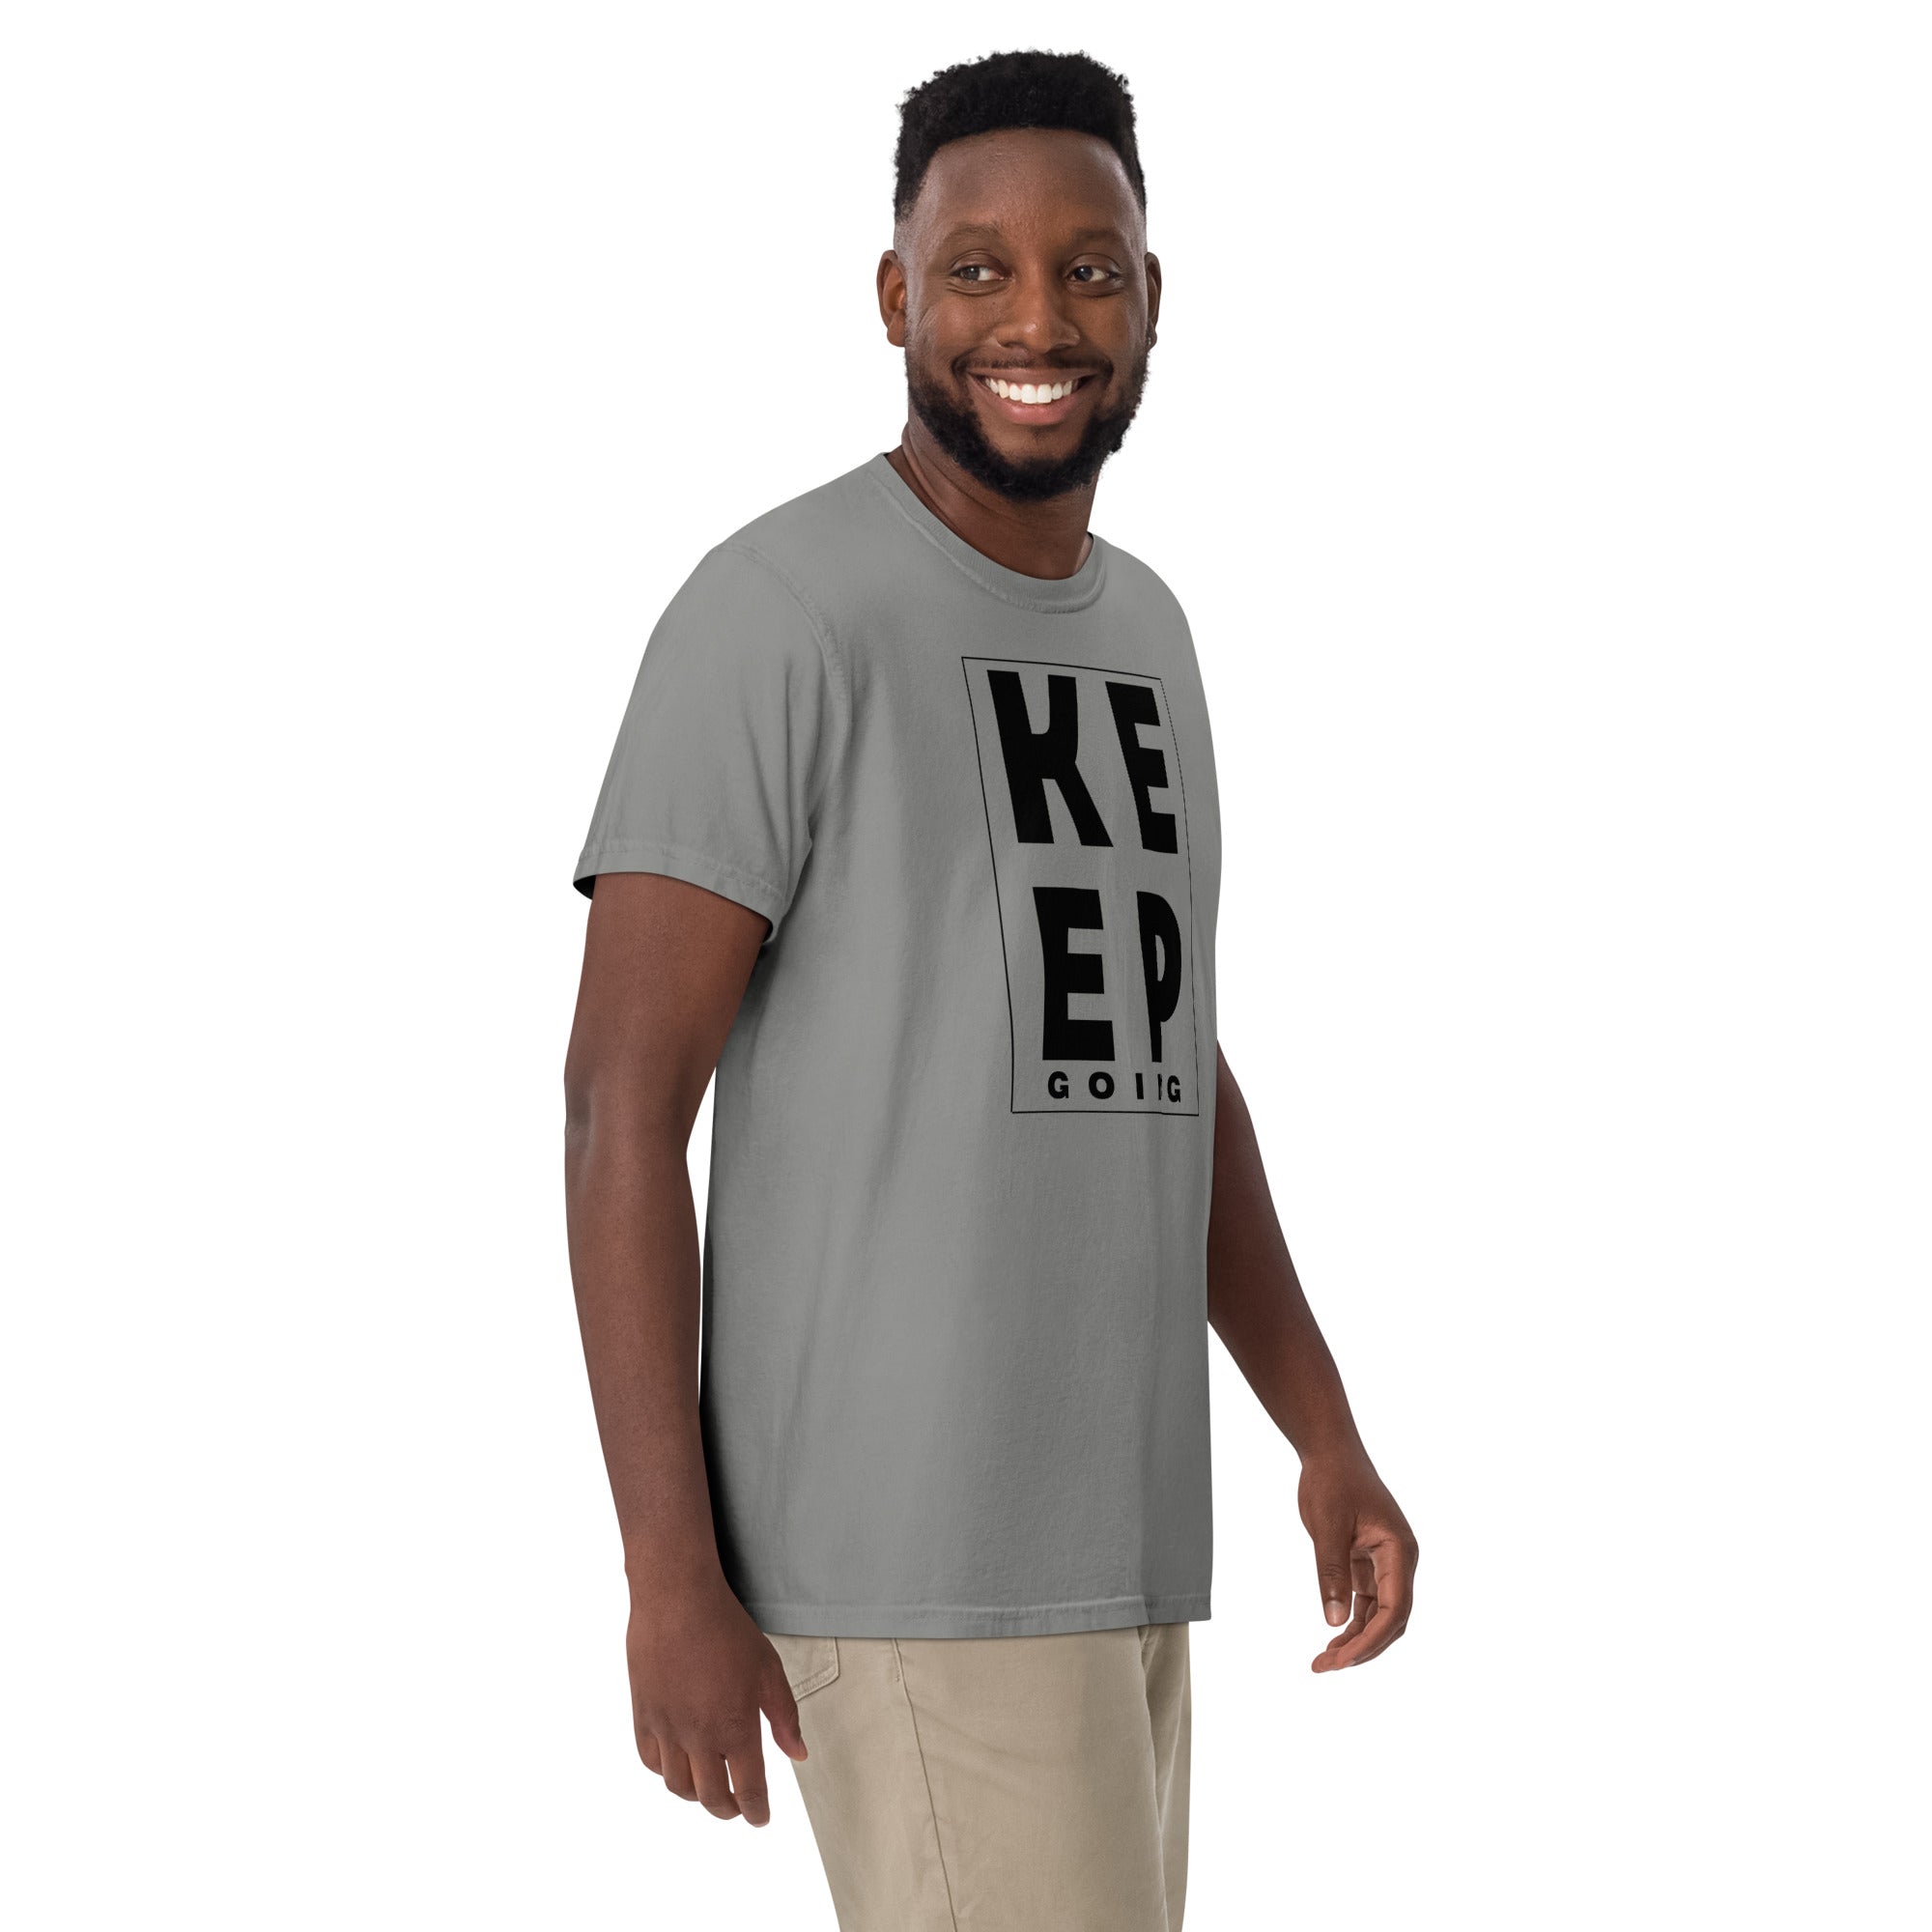 Keep Going Men’s garment-dyed heavyweight t-shirt